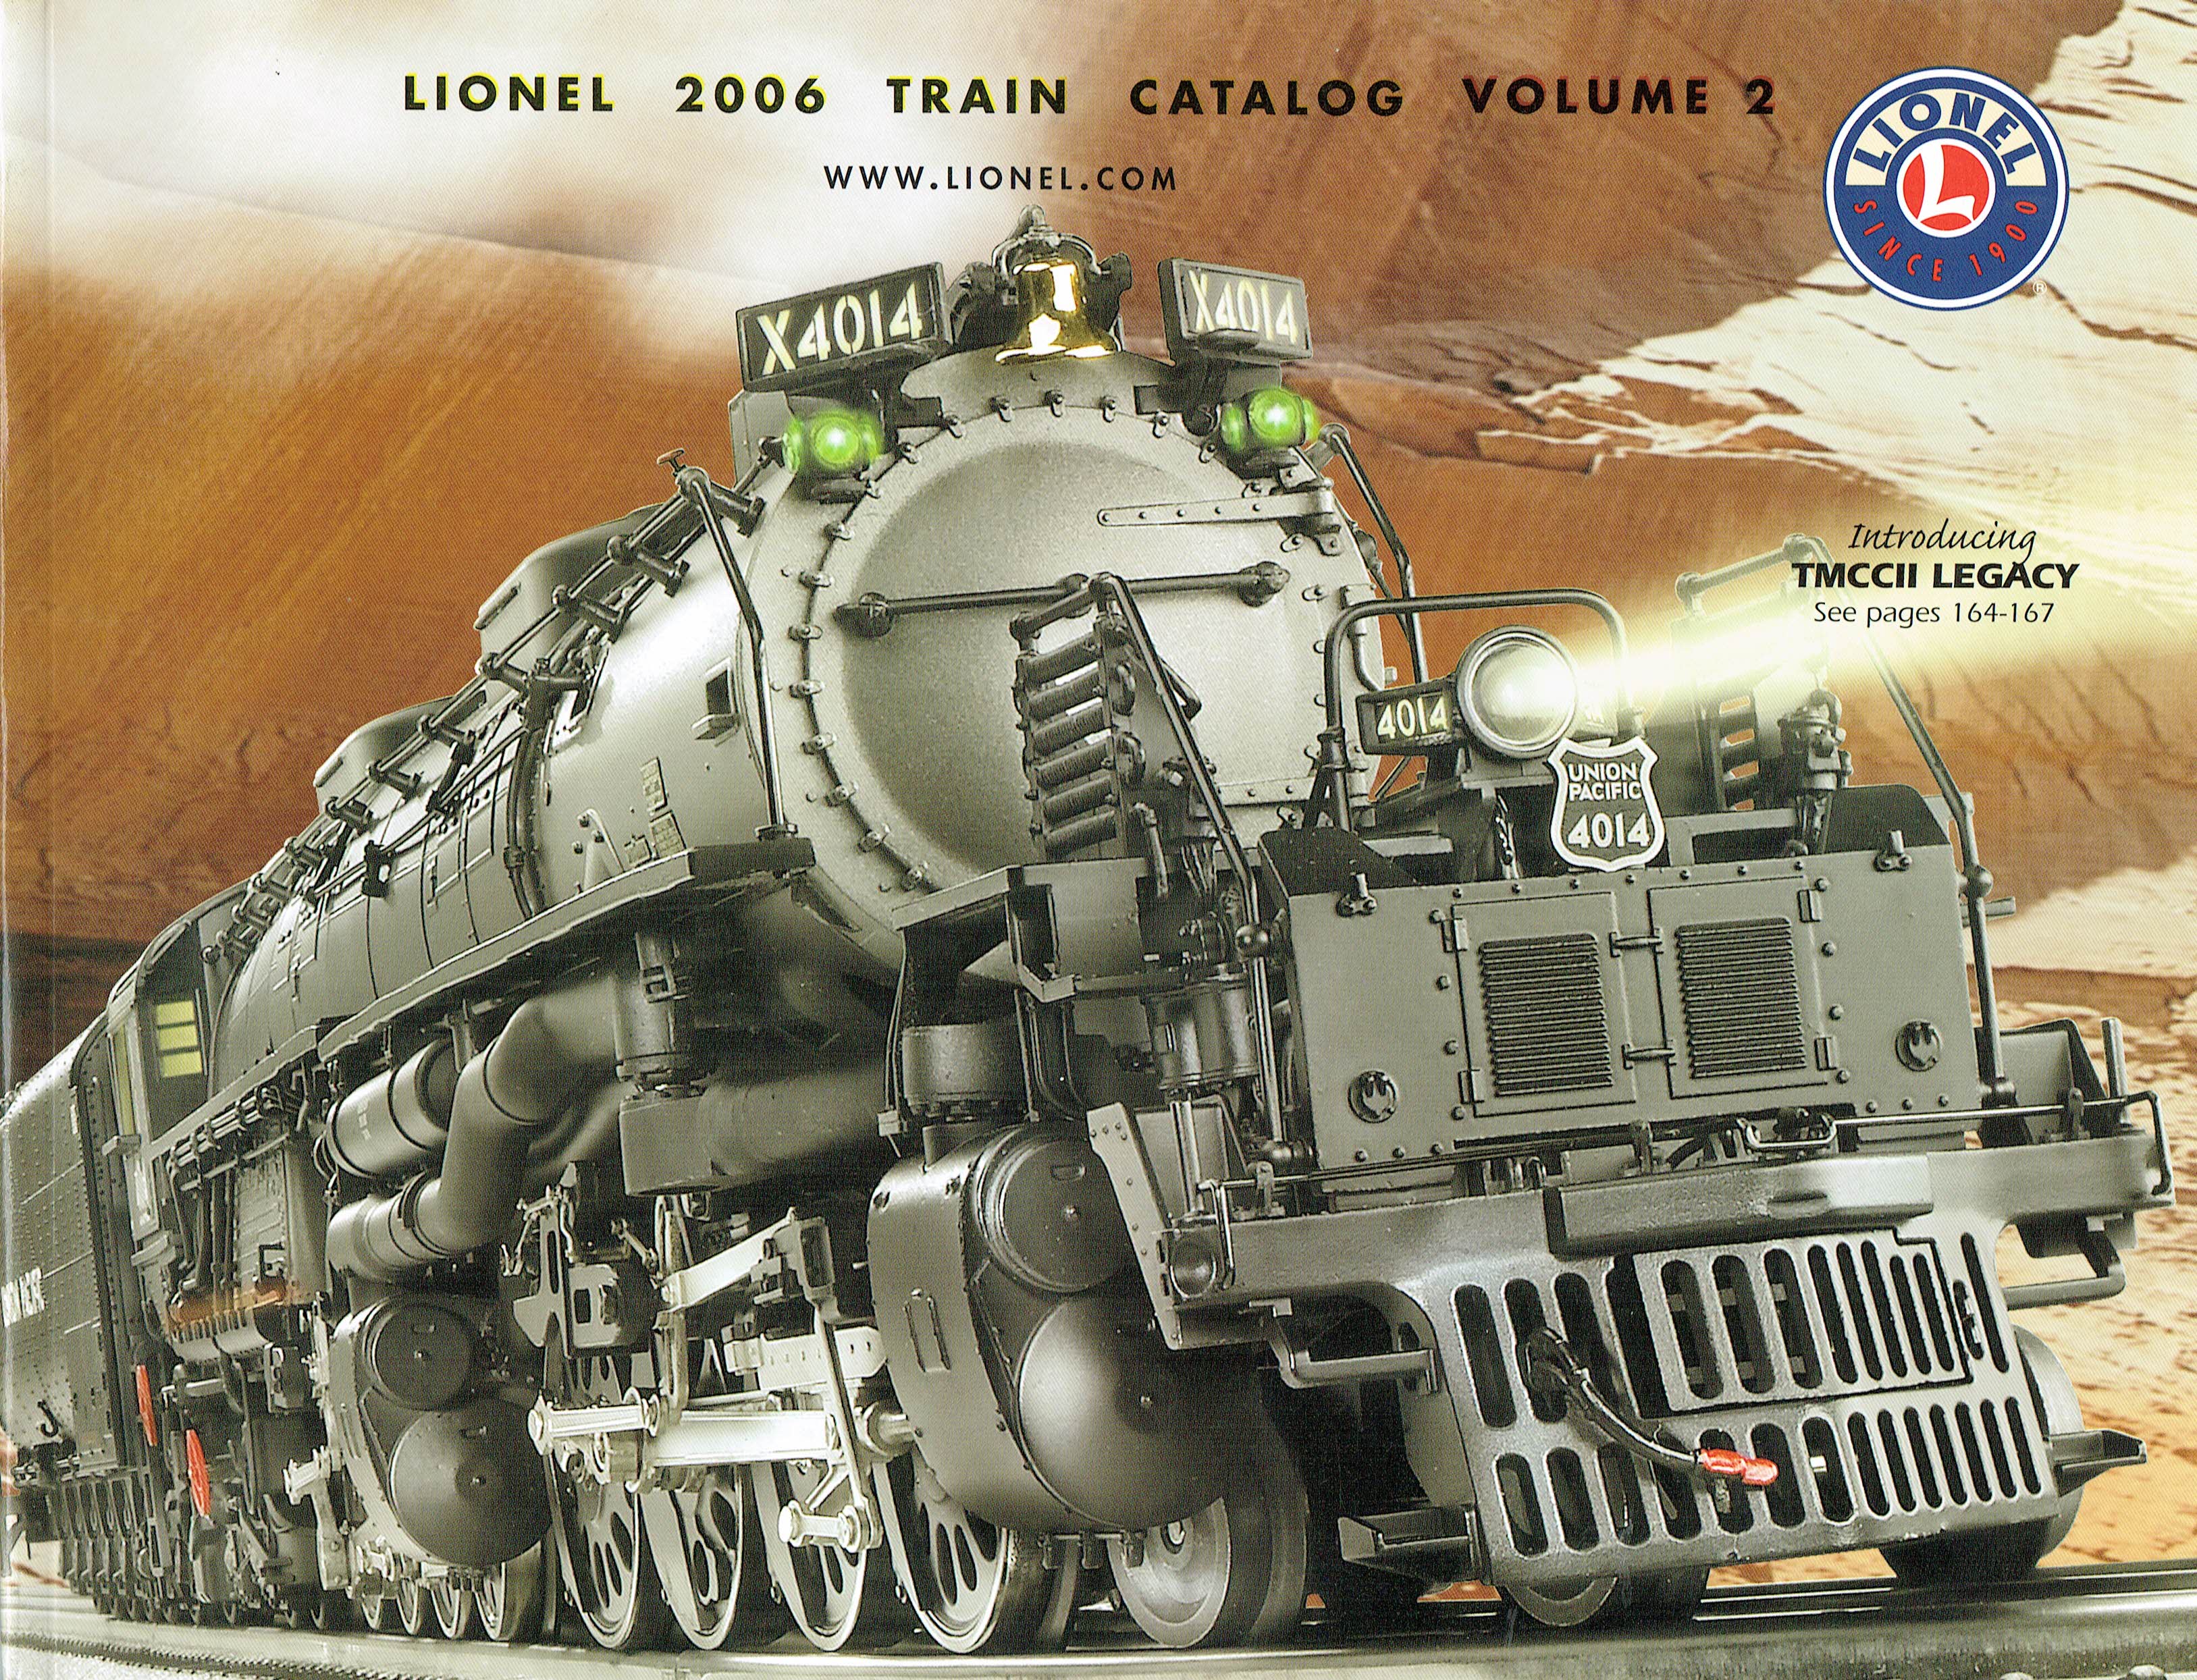 Lionel 2006 Train Catalog Volume 2 image